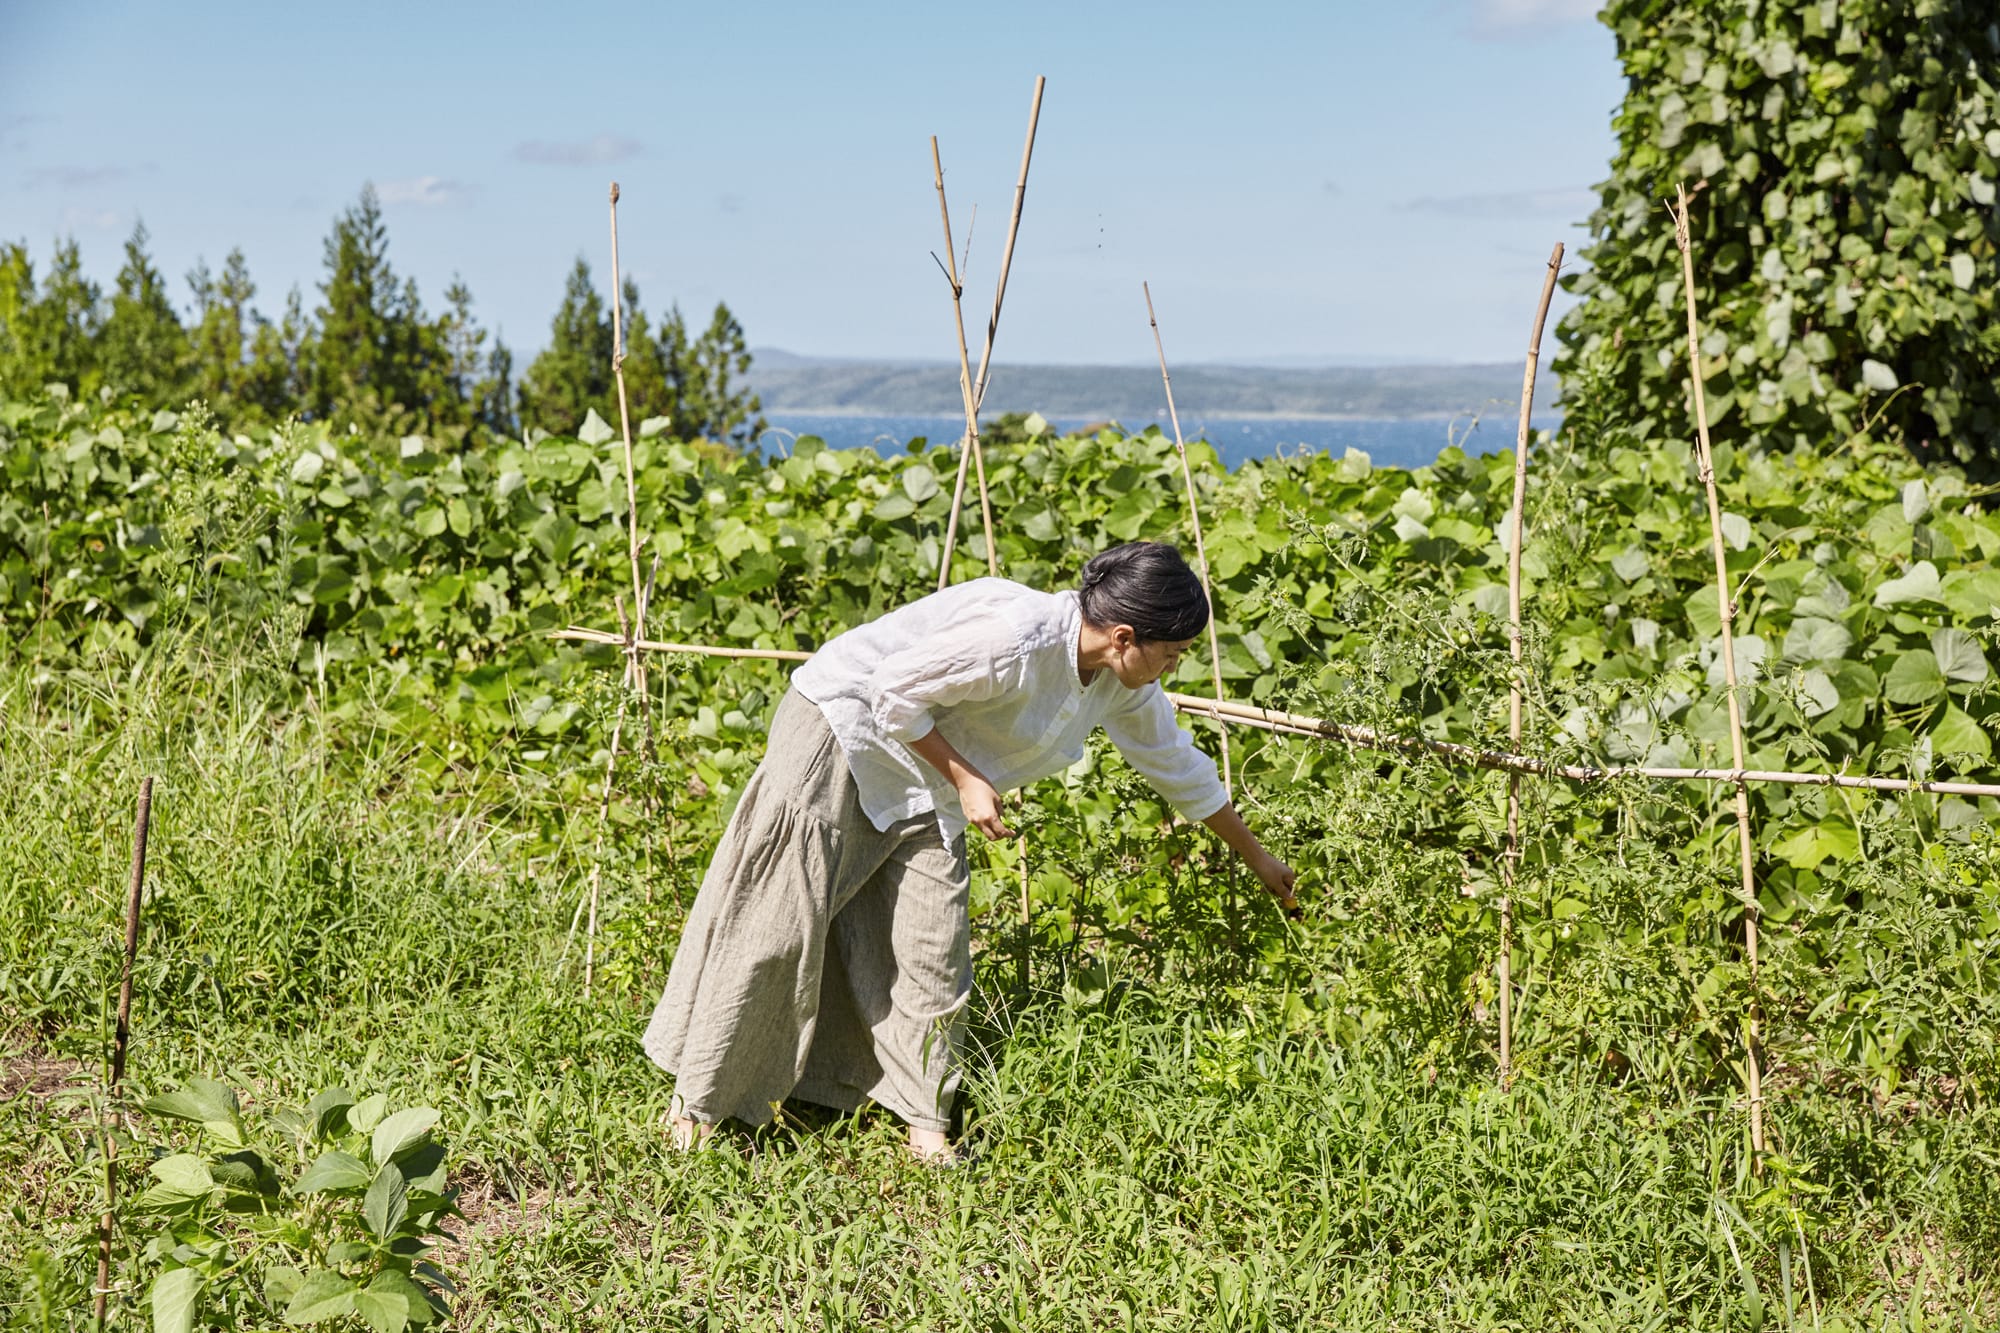 「のて農」を実践しているのは、能登島の魅力に出会って2013年に移住をしたイラストレーターの本田有希子さん。本田さんは現在、「のとじま手まつり」の中心スタッフとして事務作業を一手に担っている。写真：阿部 健